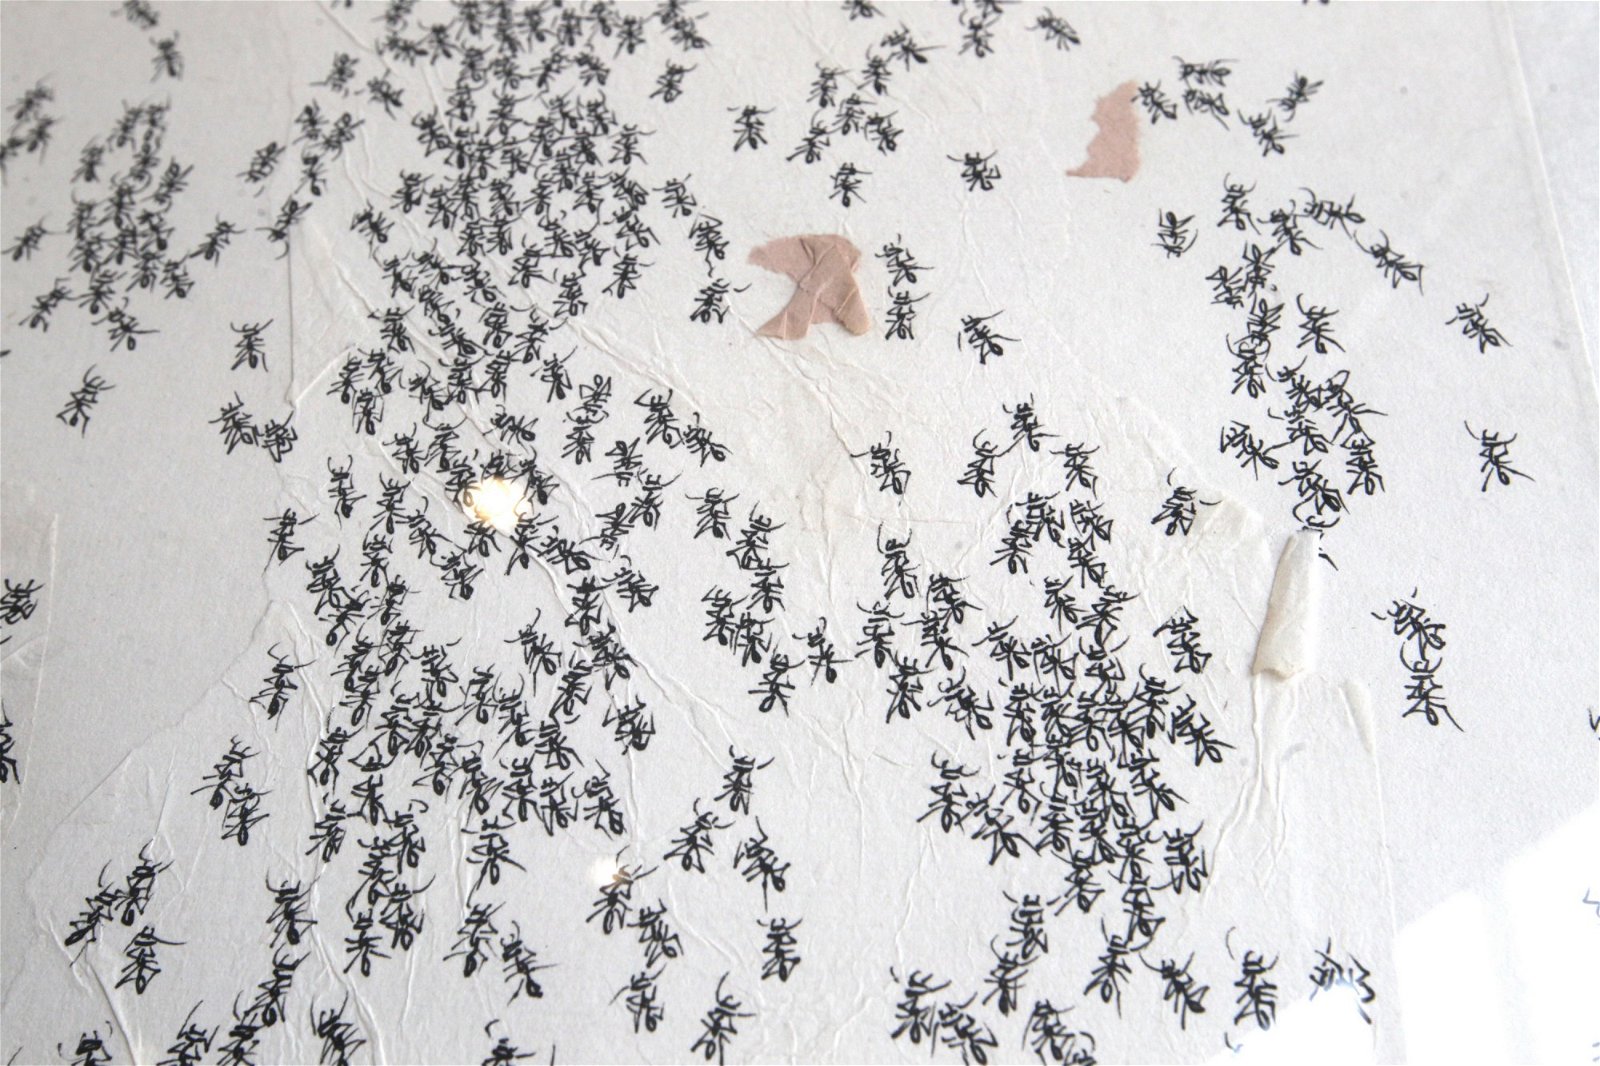 吴亚鸿以蚂蚁作品闯出名堂。蚂蚁代表了他的人生历程：一个小小的生命，一直走下去的希望。